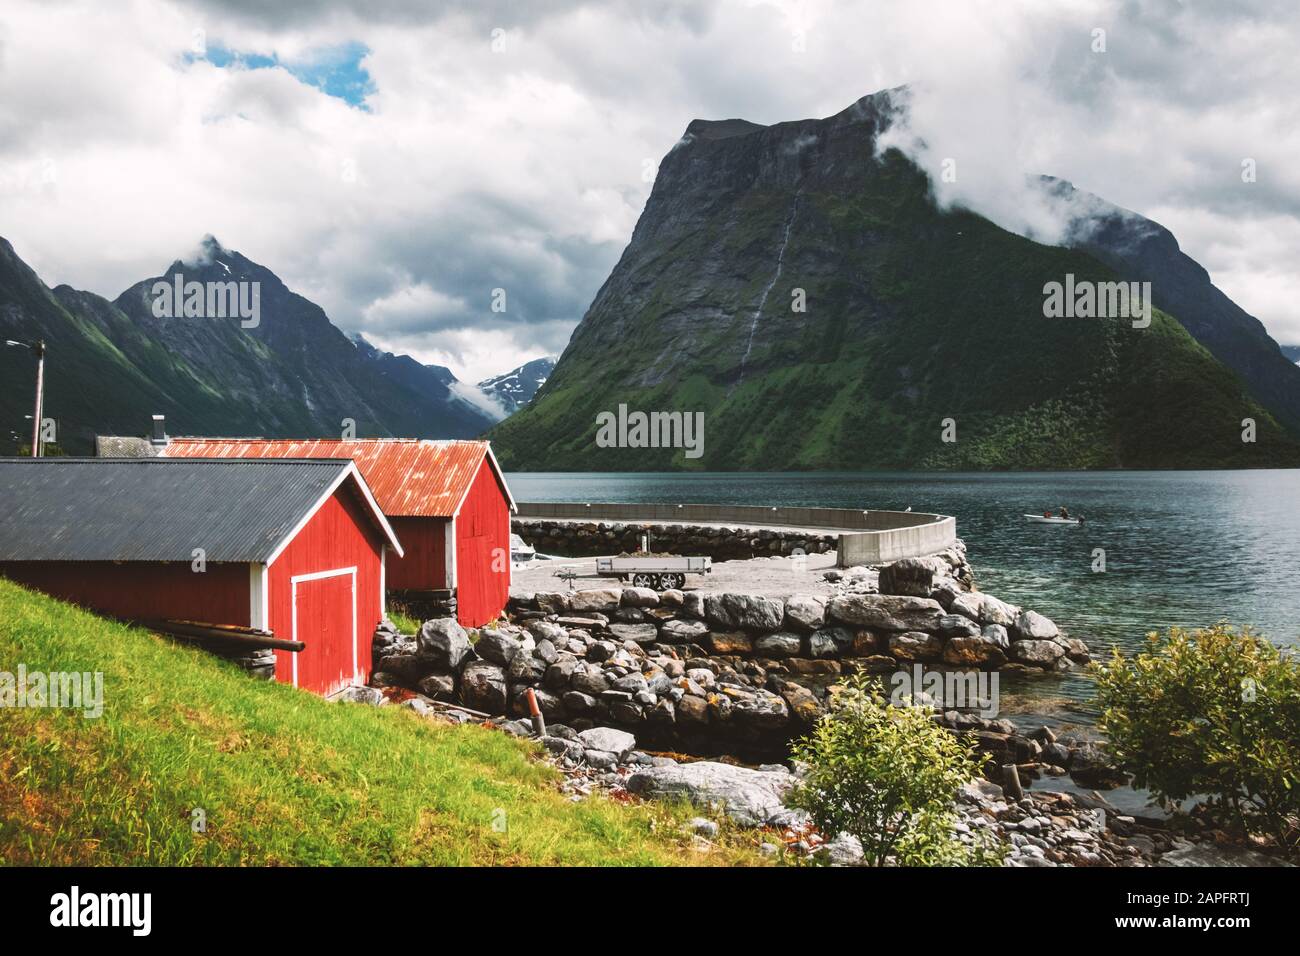 Malerische Szene des Dorfes Urke und des Fjords Hjorundfjord, Norwegen. Drammatischer Himmel und düstere Berge. Landschaftsfotografie Stockfoto